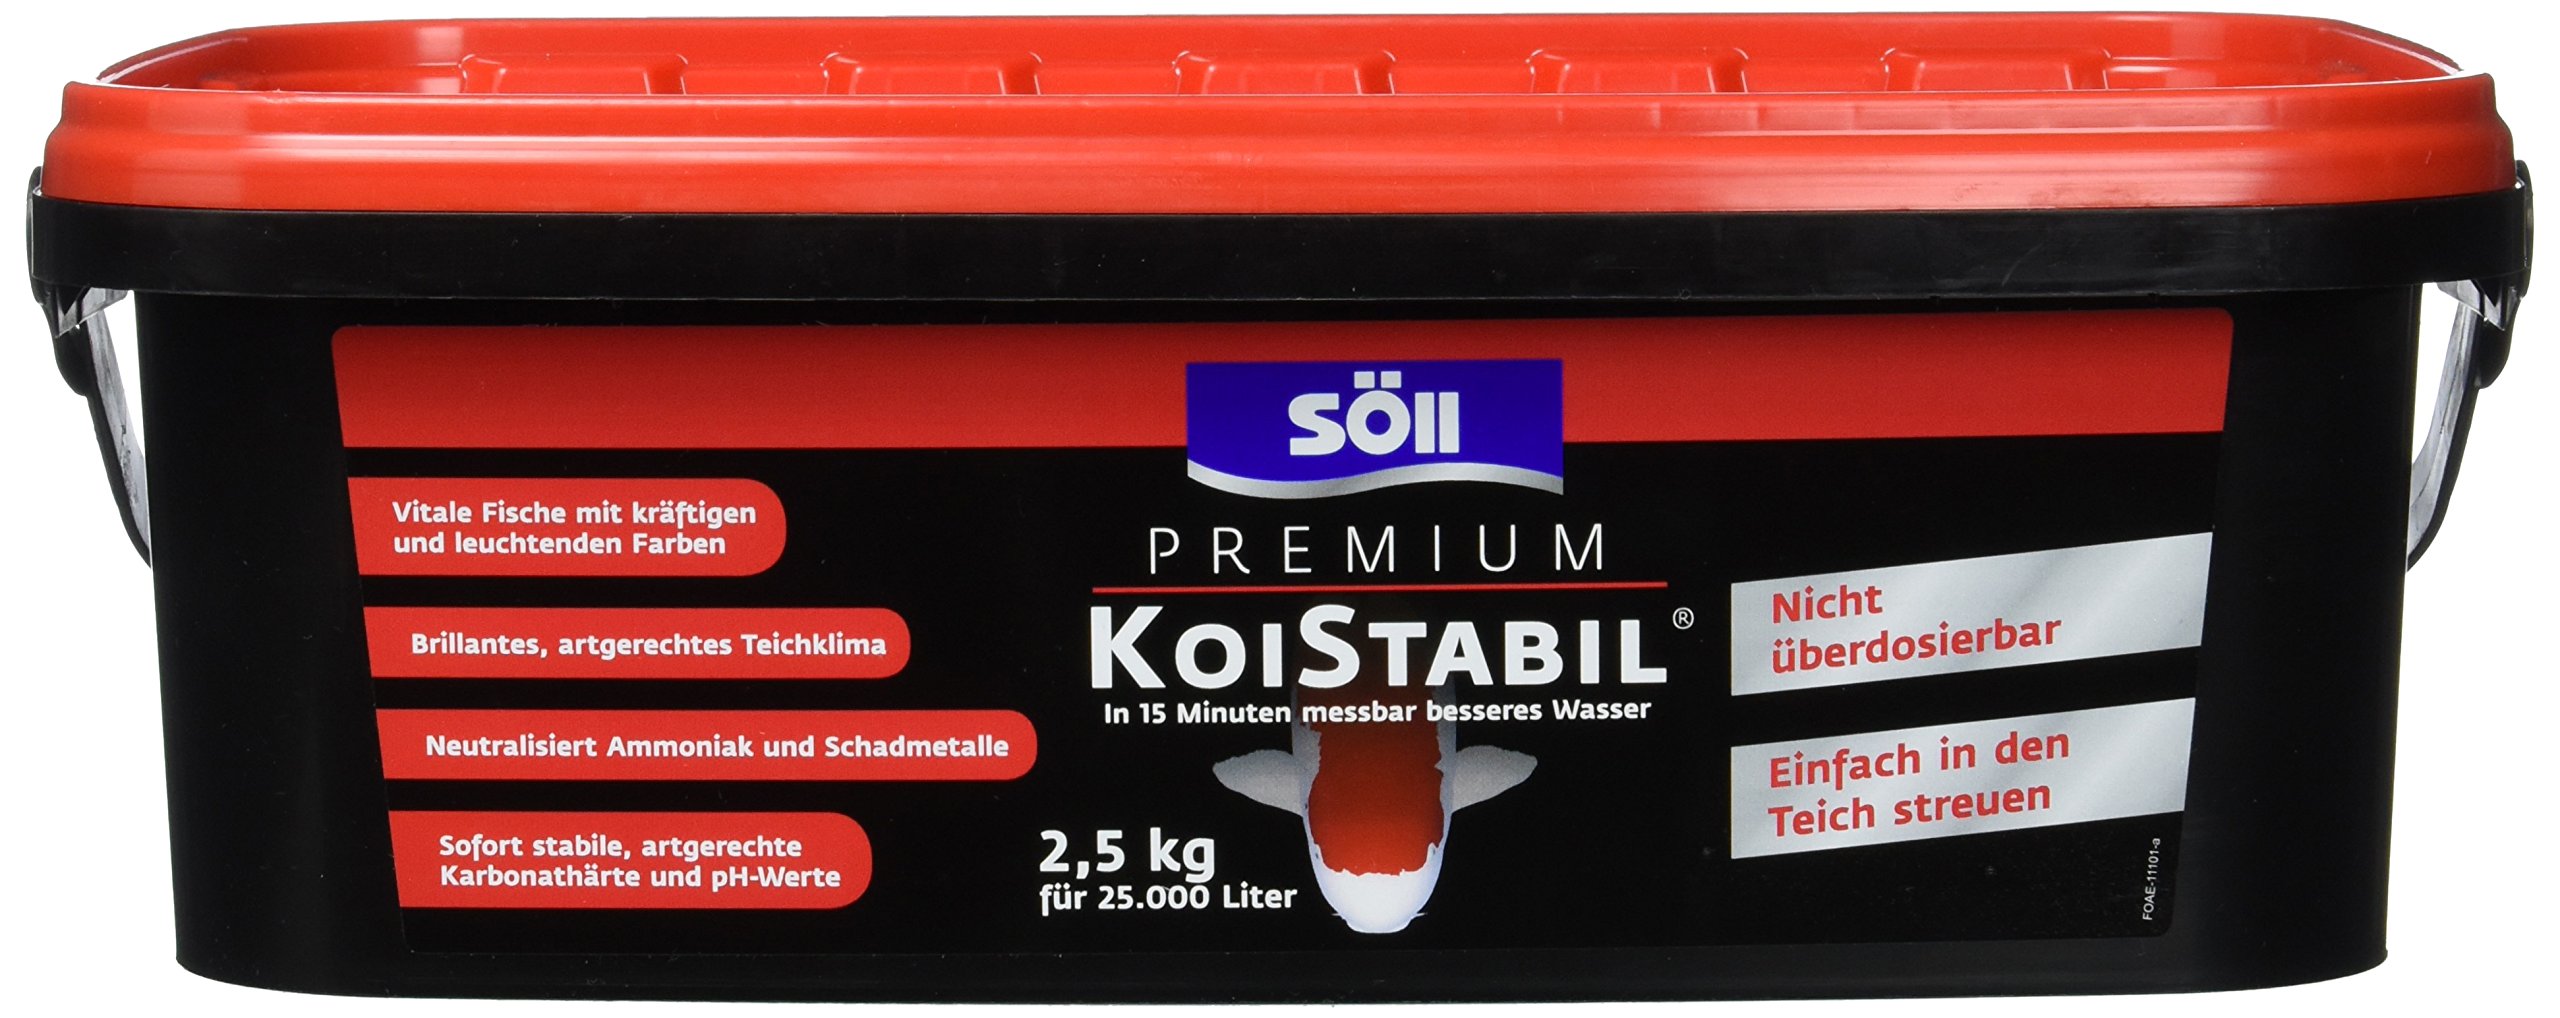 Söll 81891 Premium KoiStabil Teichstabilisator 2,5 kg - effektiver Wasseraufbereiter reguliert pH-Wert und KH-Wert für messbar besseres Teichwasser im Gartenteich Fischteich Koiteich, Koi-gerecht